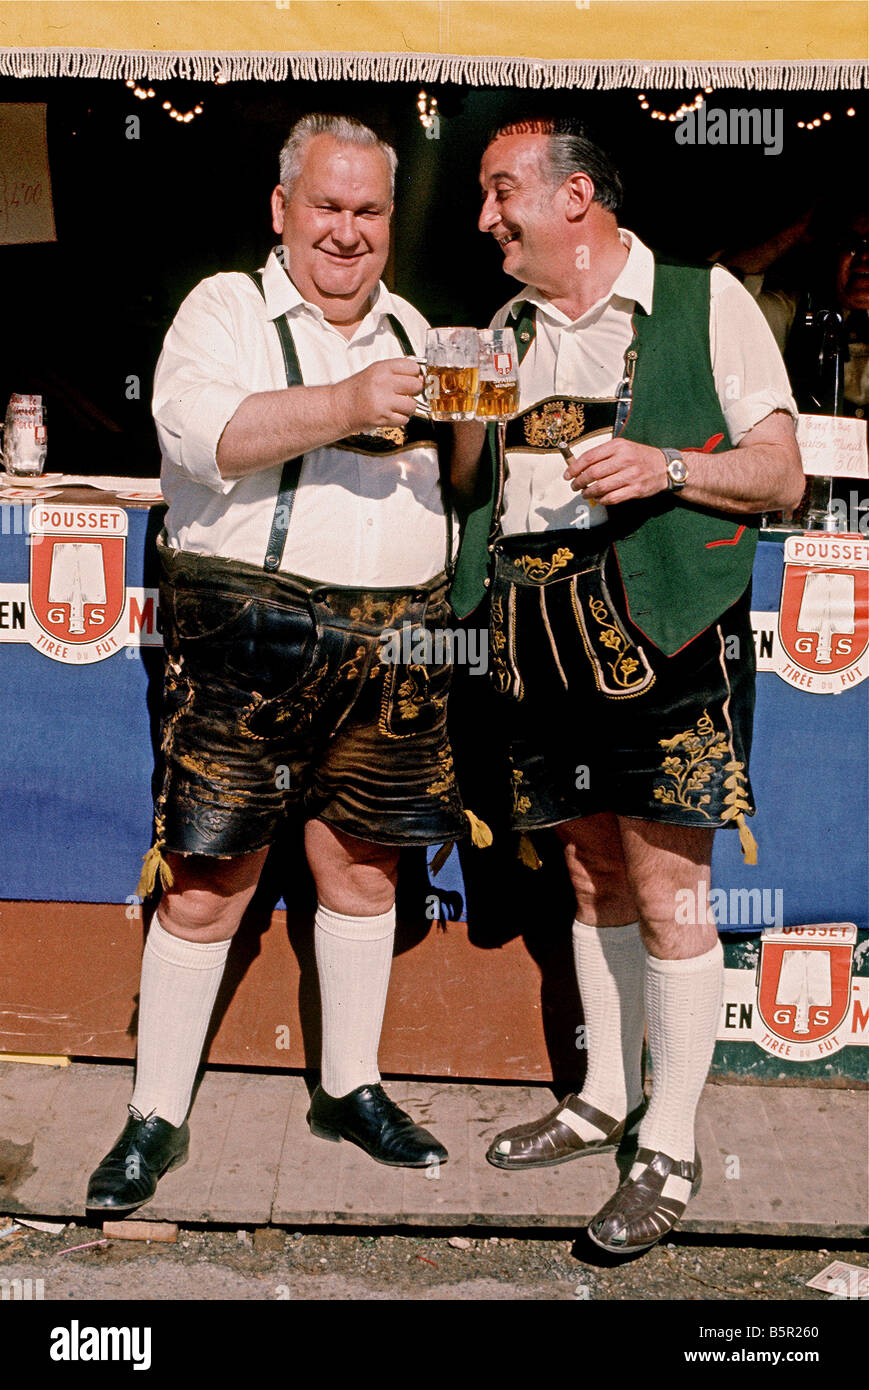 Deux buveurs de bière allemande portant des pantalons à la Le Mans 24 Heures de course,France Banque D'Images